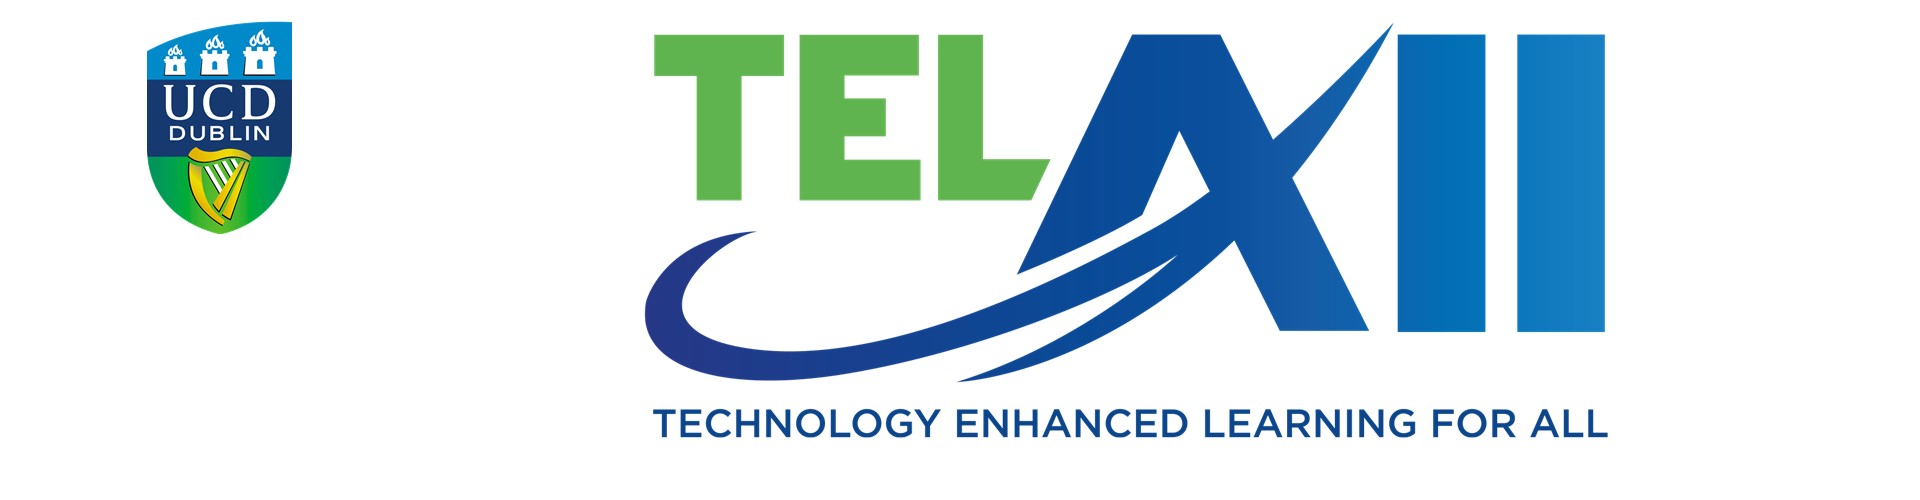 TEL All - Technology Enhanced Learning for All Webinar Series 2022